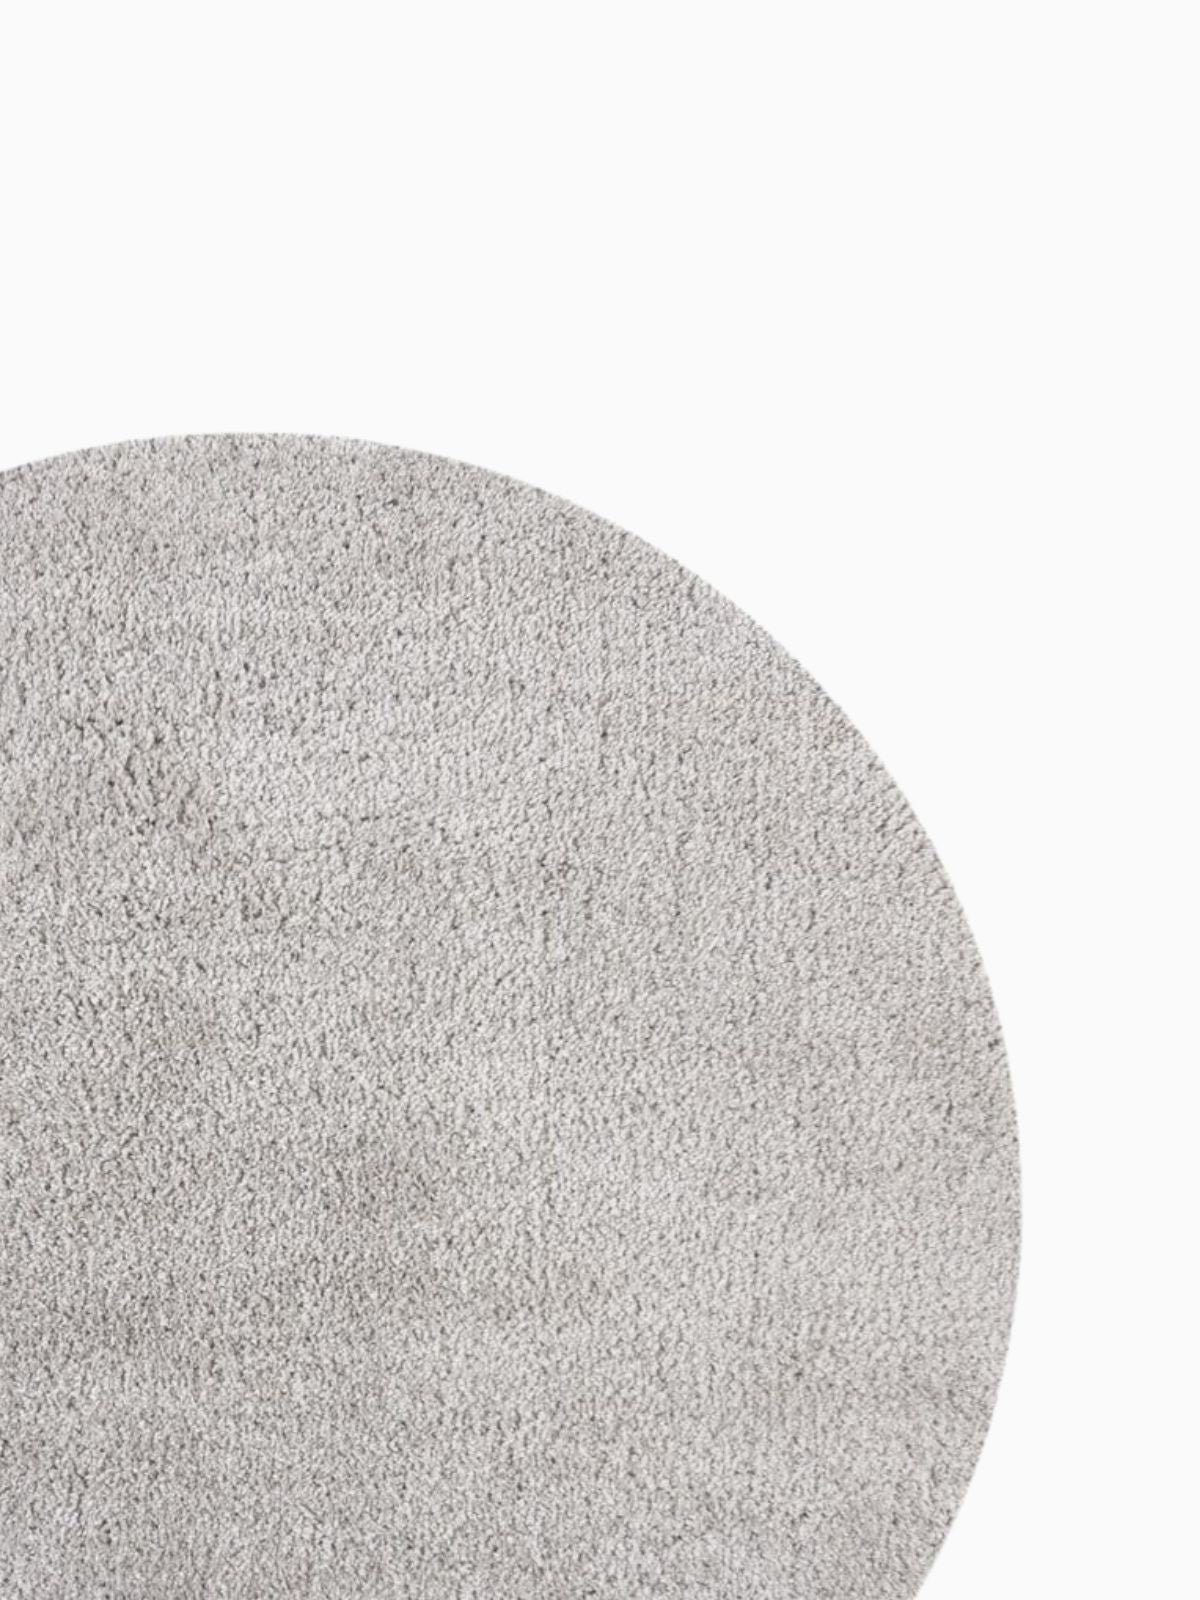 Tappeto rotondo shaggy Feather Soft in polipropilene, colore grigio 133x133 cm.-4